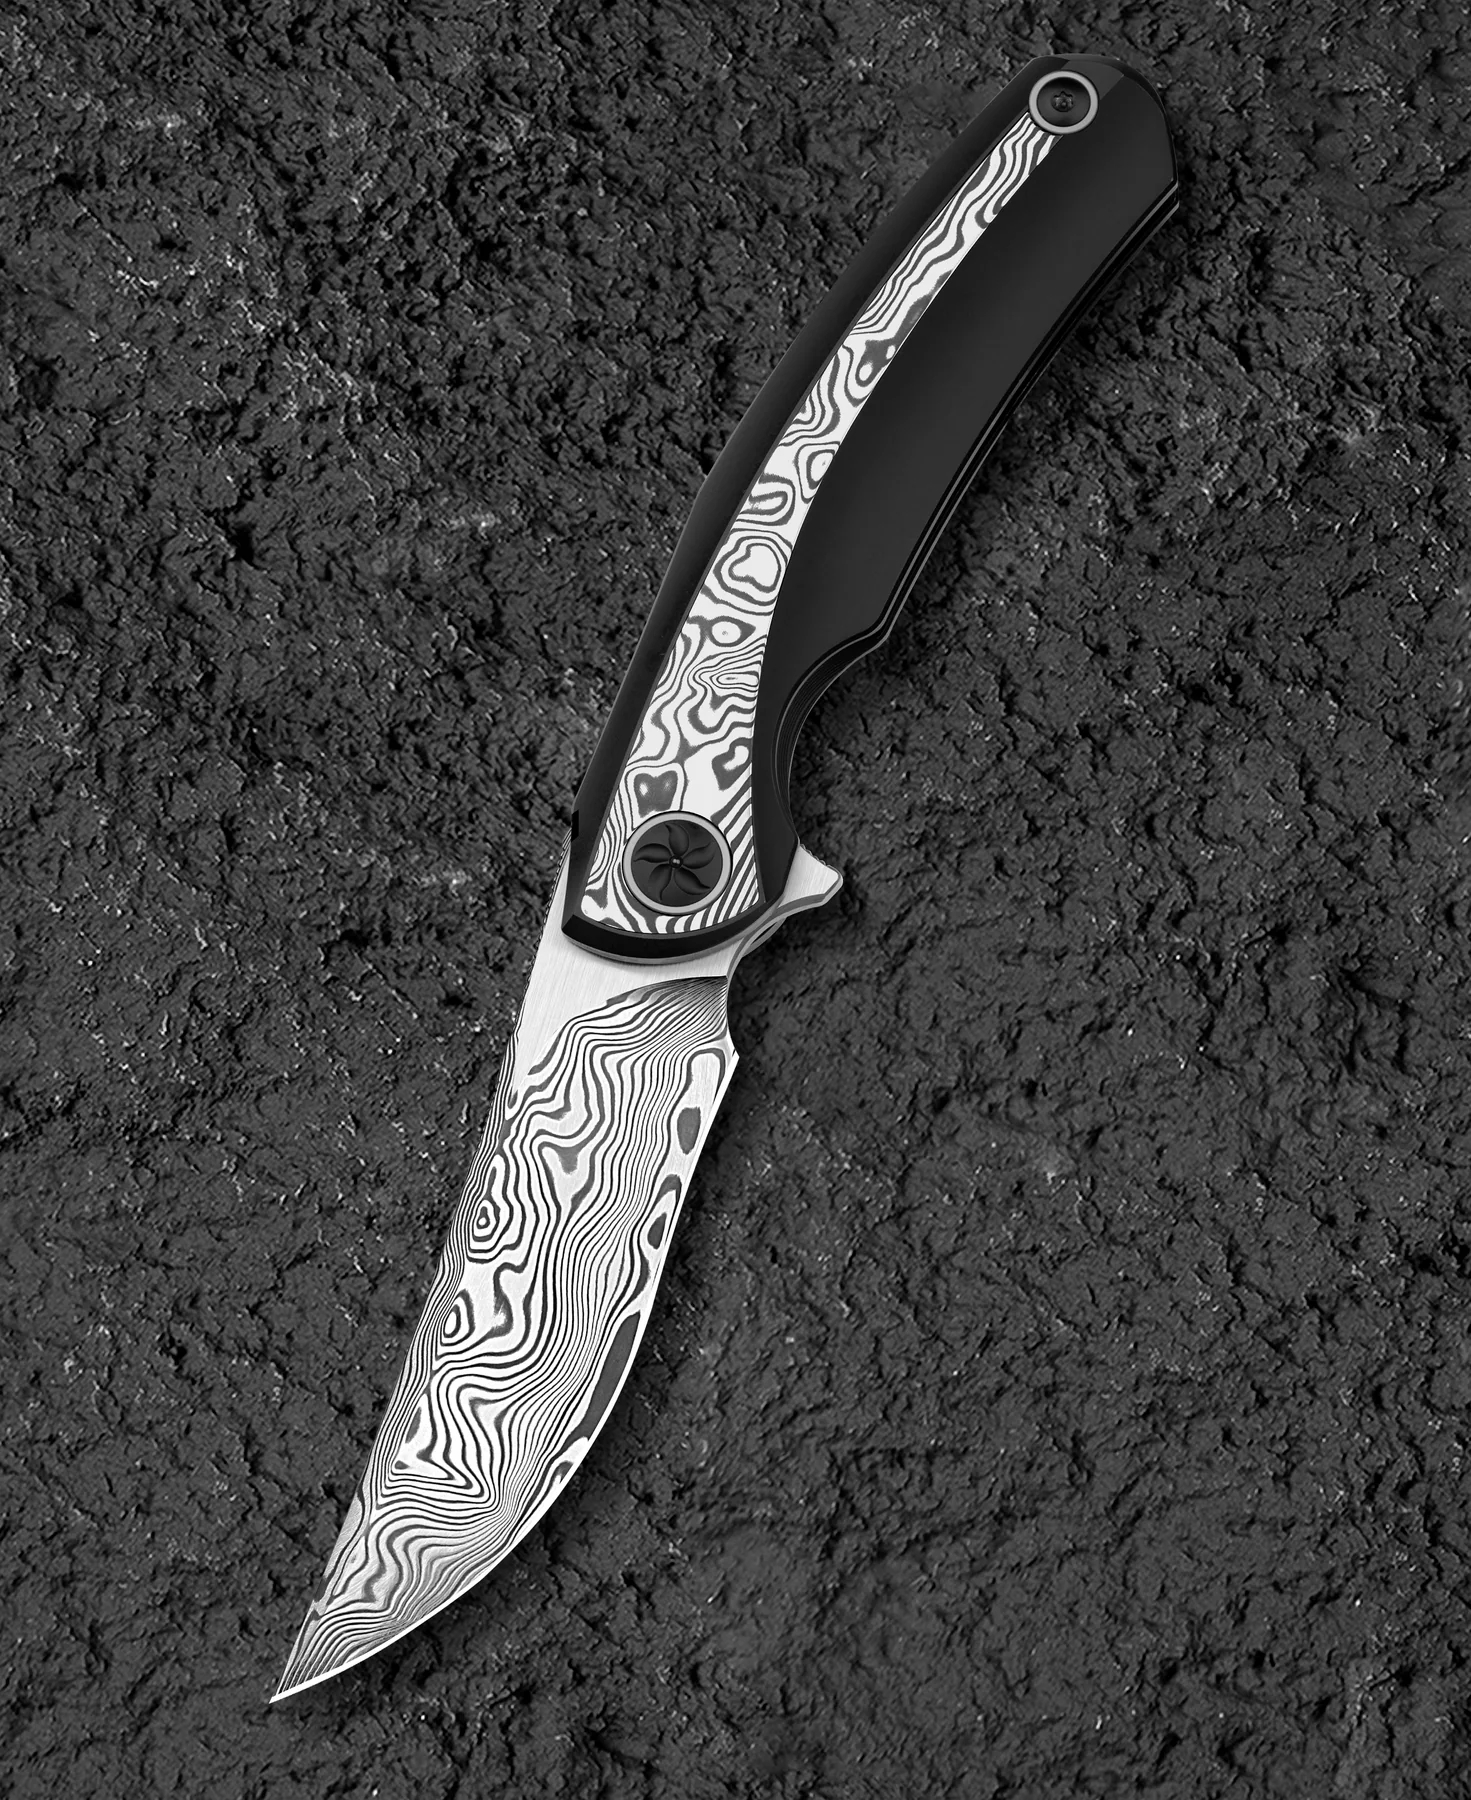 Bestech Sambac 大马士革钢 钛柄镶嵌大马士革钢柄 BT2402E 6360